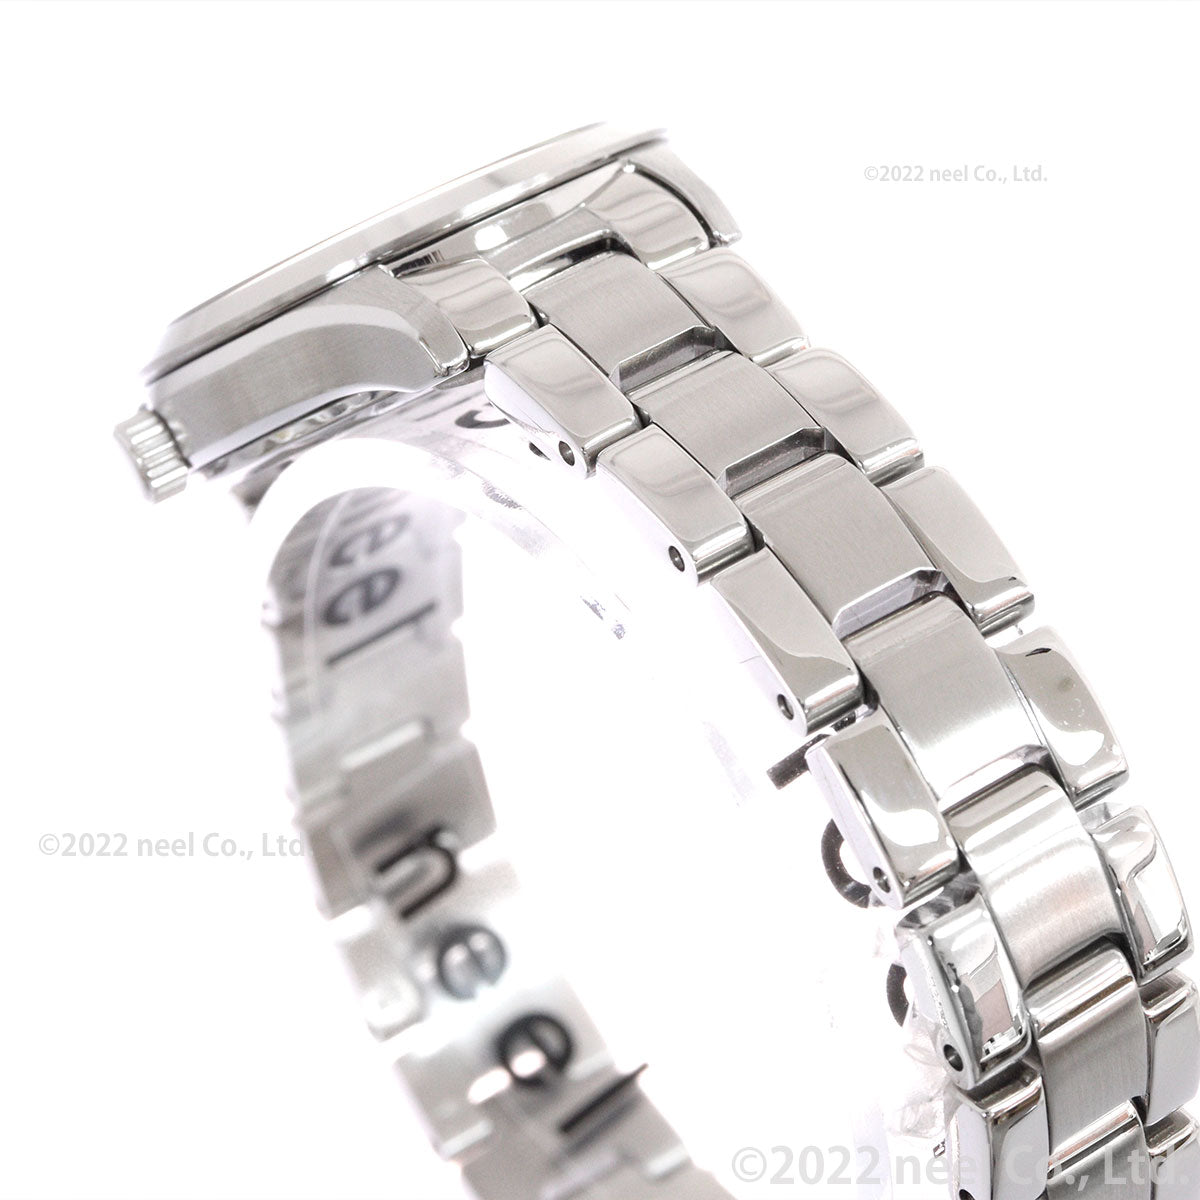 セイコー セレクション SEIKO SELECTION Sシリーズ ショップ専用 流通限定モデル ソーラー 腕時計 レディース ペア STPX093